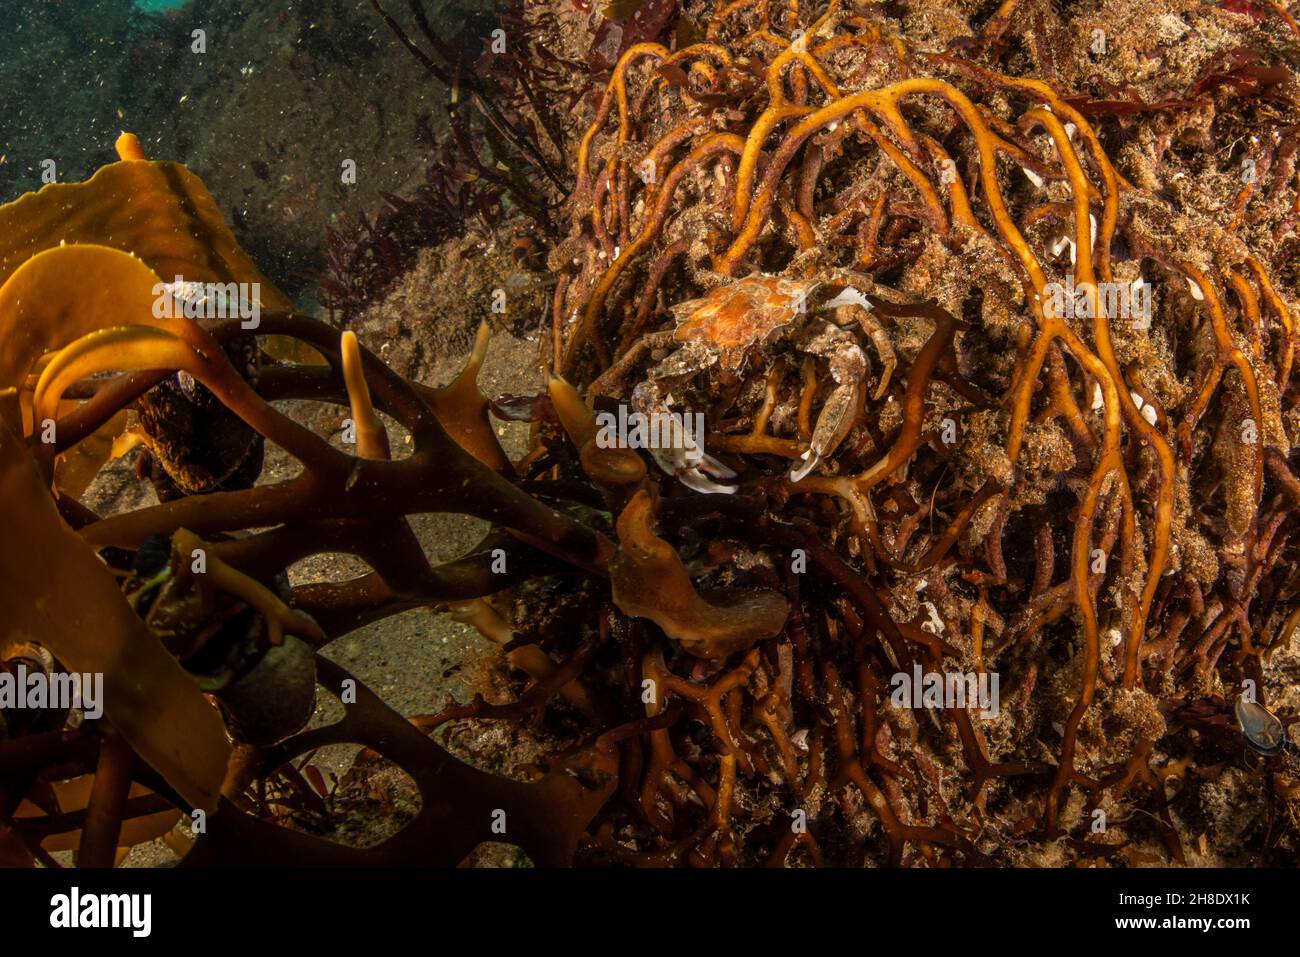 Eine Seetang-Krabbe (Pugettia producta), getarnt auf dem Holdfast eines riesigen Seetang (Macrocystis pyrifera) unter Wasser in Monterey Bay, Kalifornien. Stockfoto